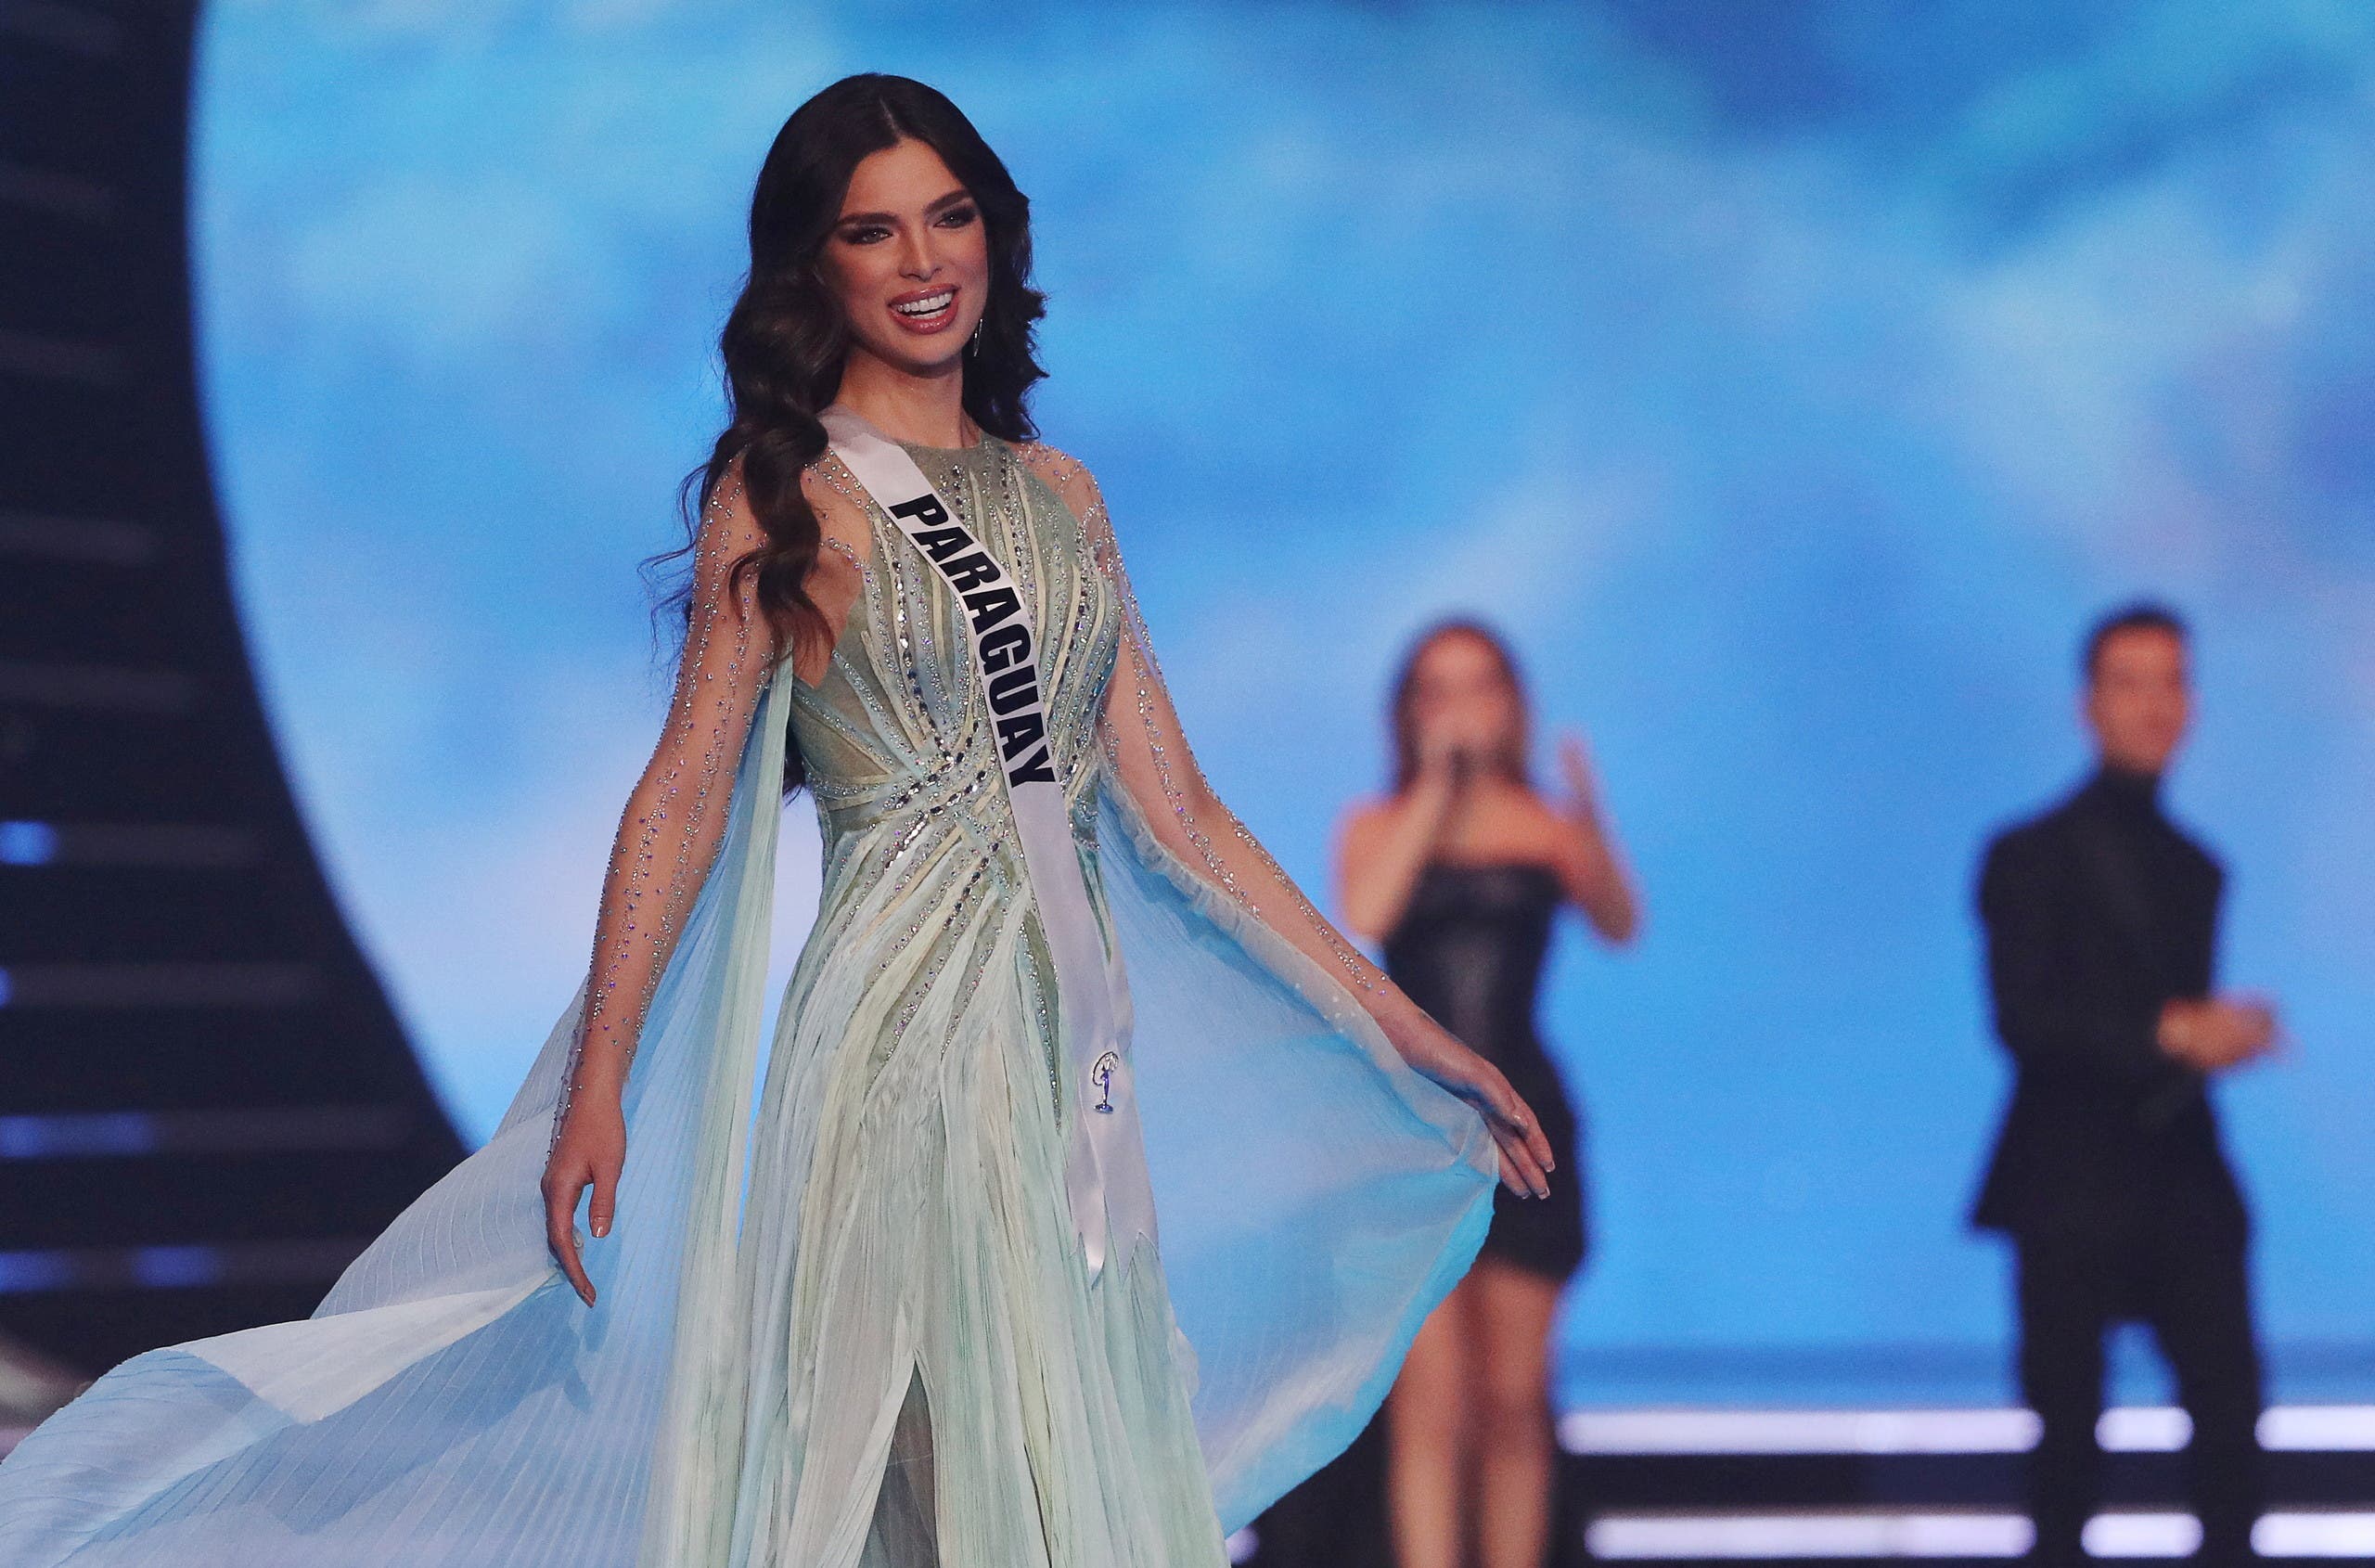   Miss Paraguay Nadia Ferrara